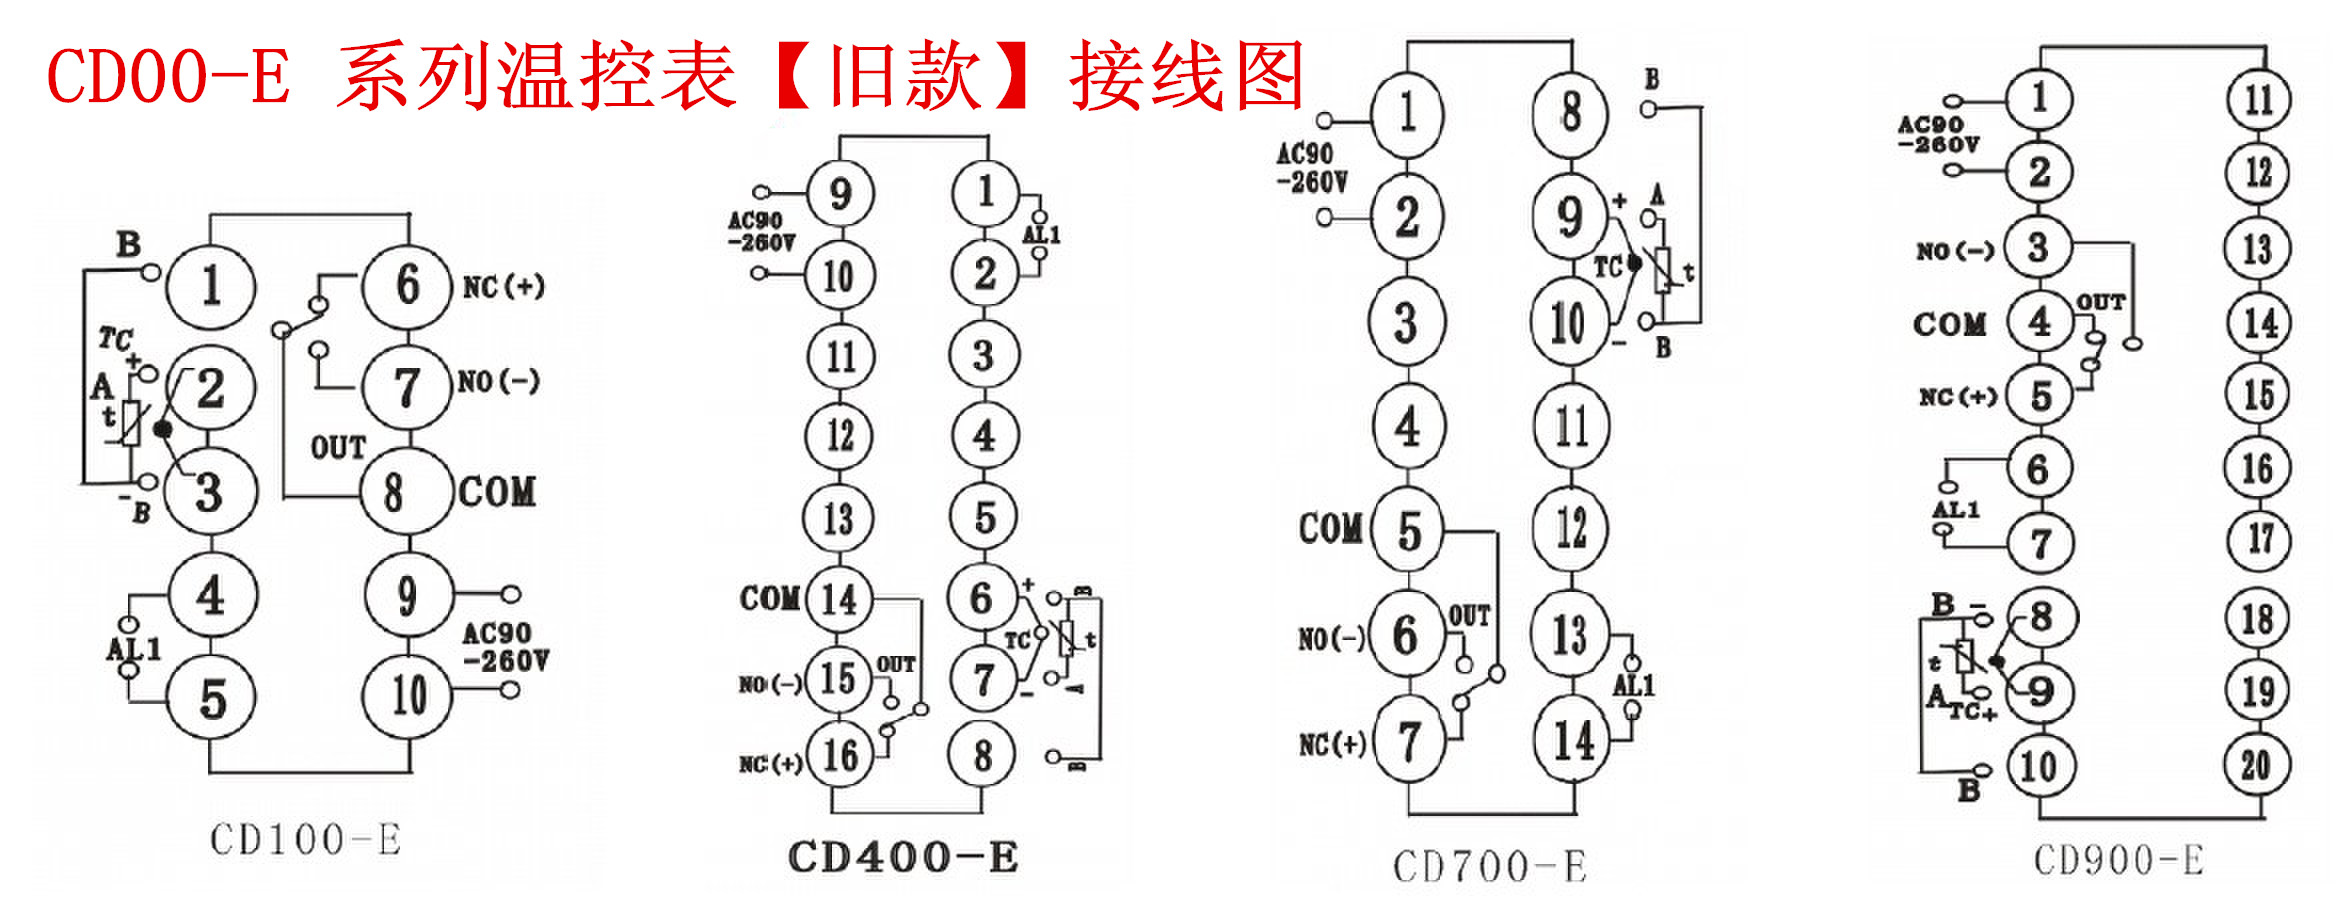 【注意】CD400-E接线图更改说明(图1)